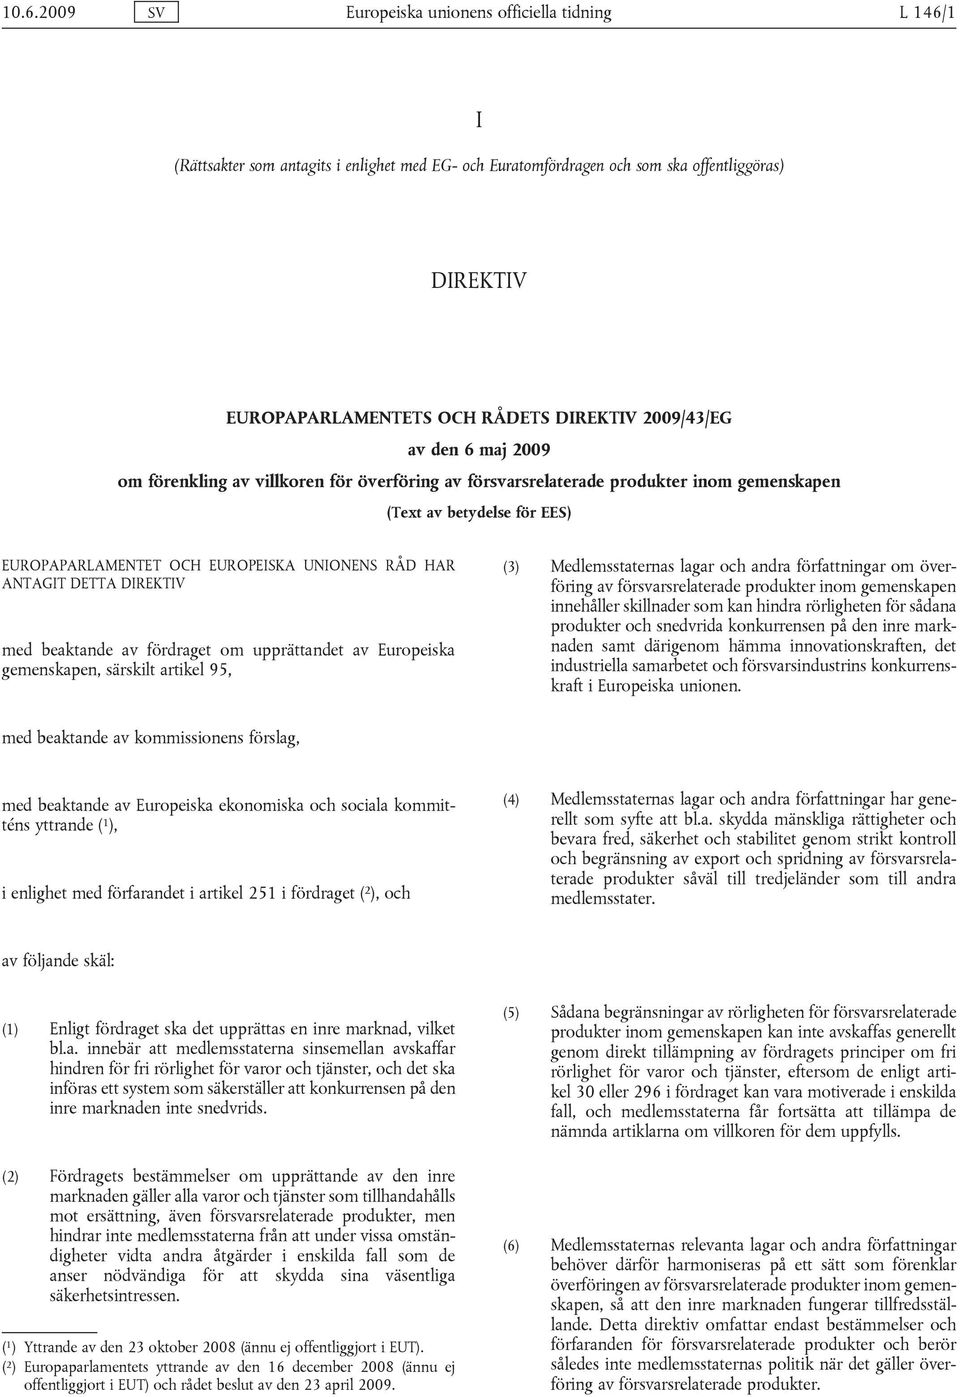 RÅD HAR ANTAGIT DETTA DIREKTIV med beaktande av fördraget om upprättandet av Europeiska gemenskapen, särskilt artikel 95, (3) Medlemsstaternas lagar och andra författningar om överföring av